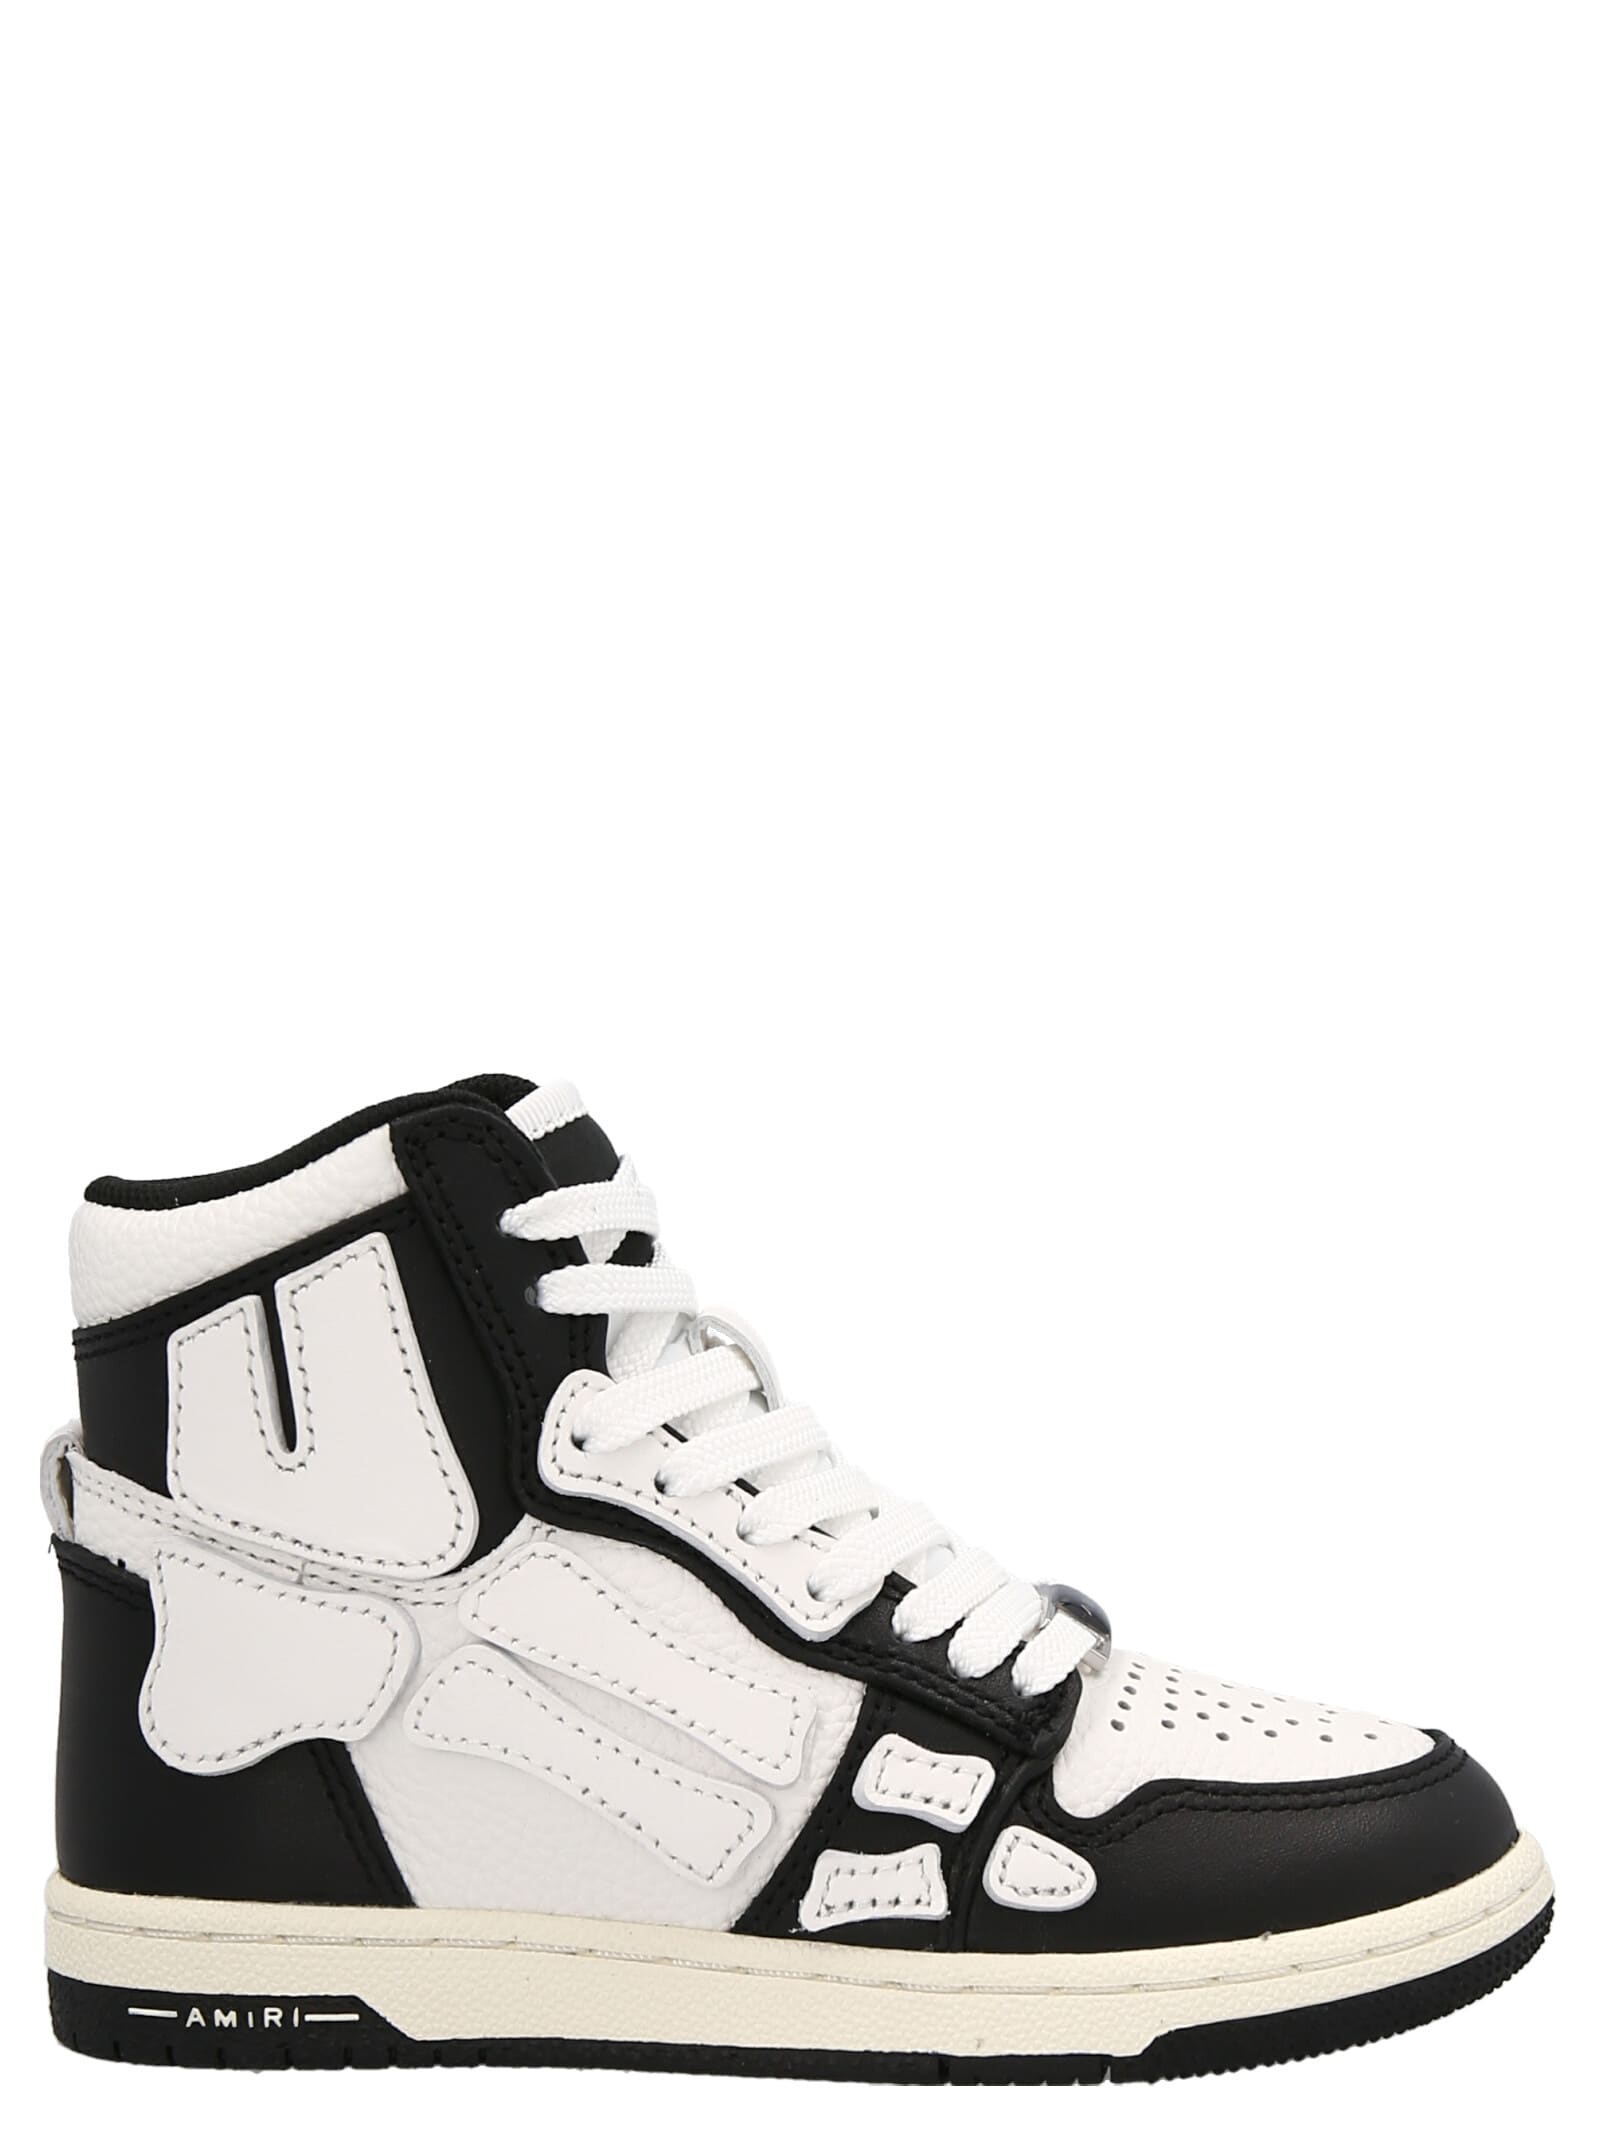 Amiri Kids' Skel Sneakers In White/black